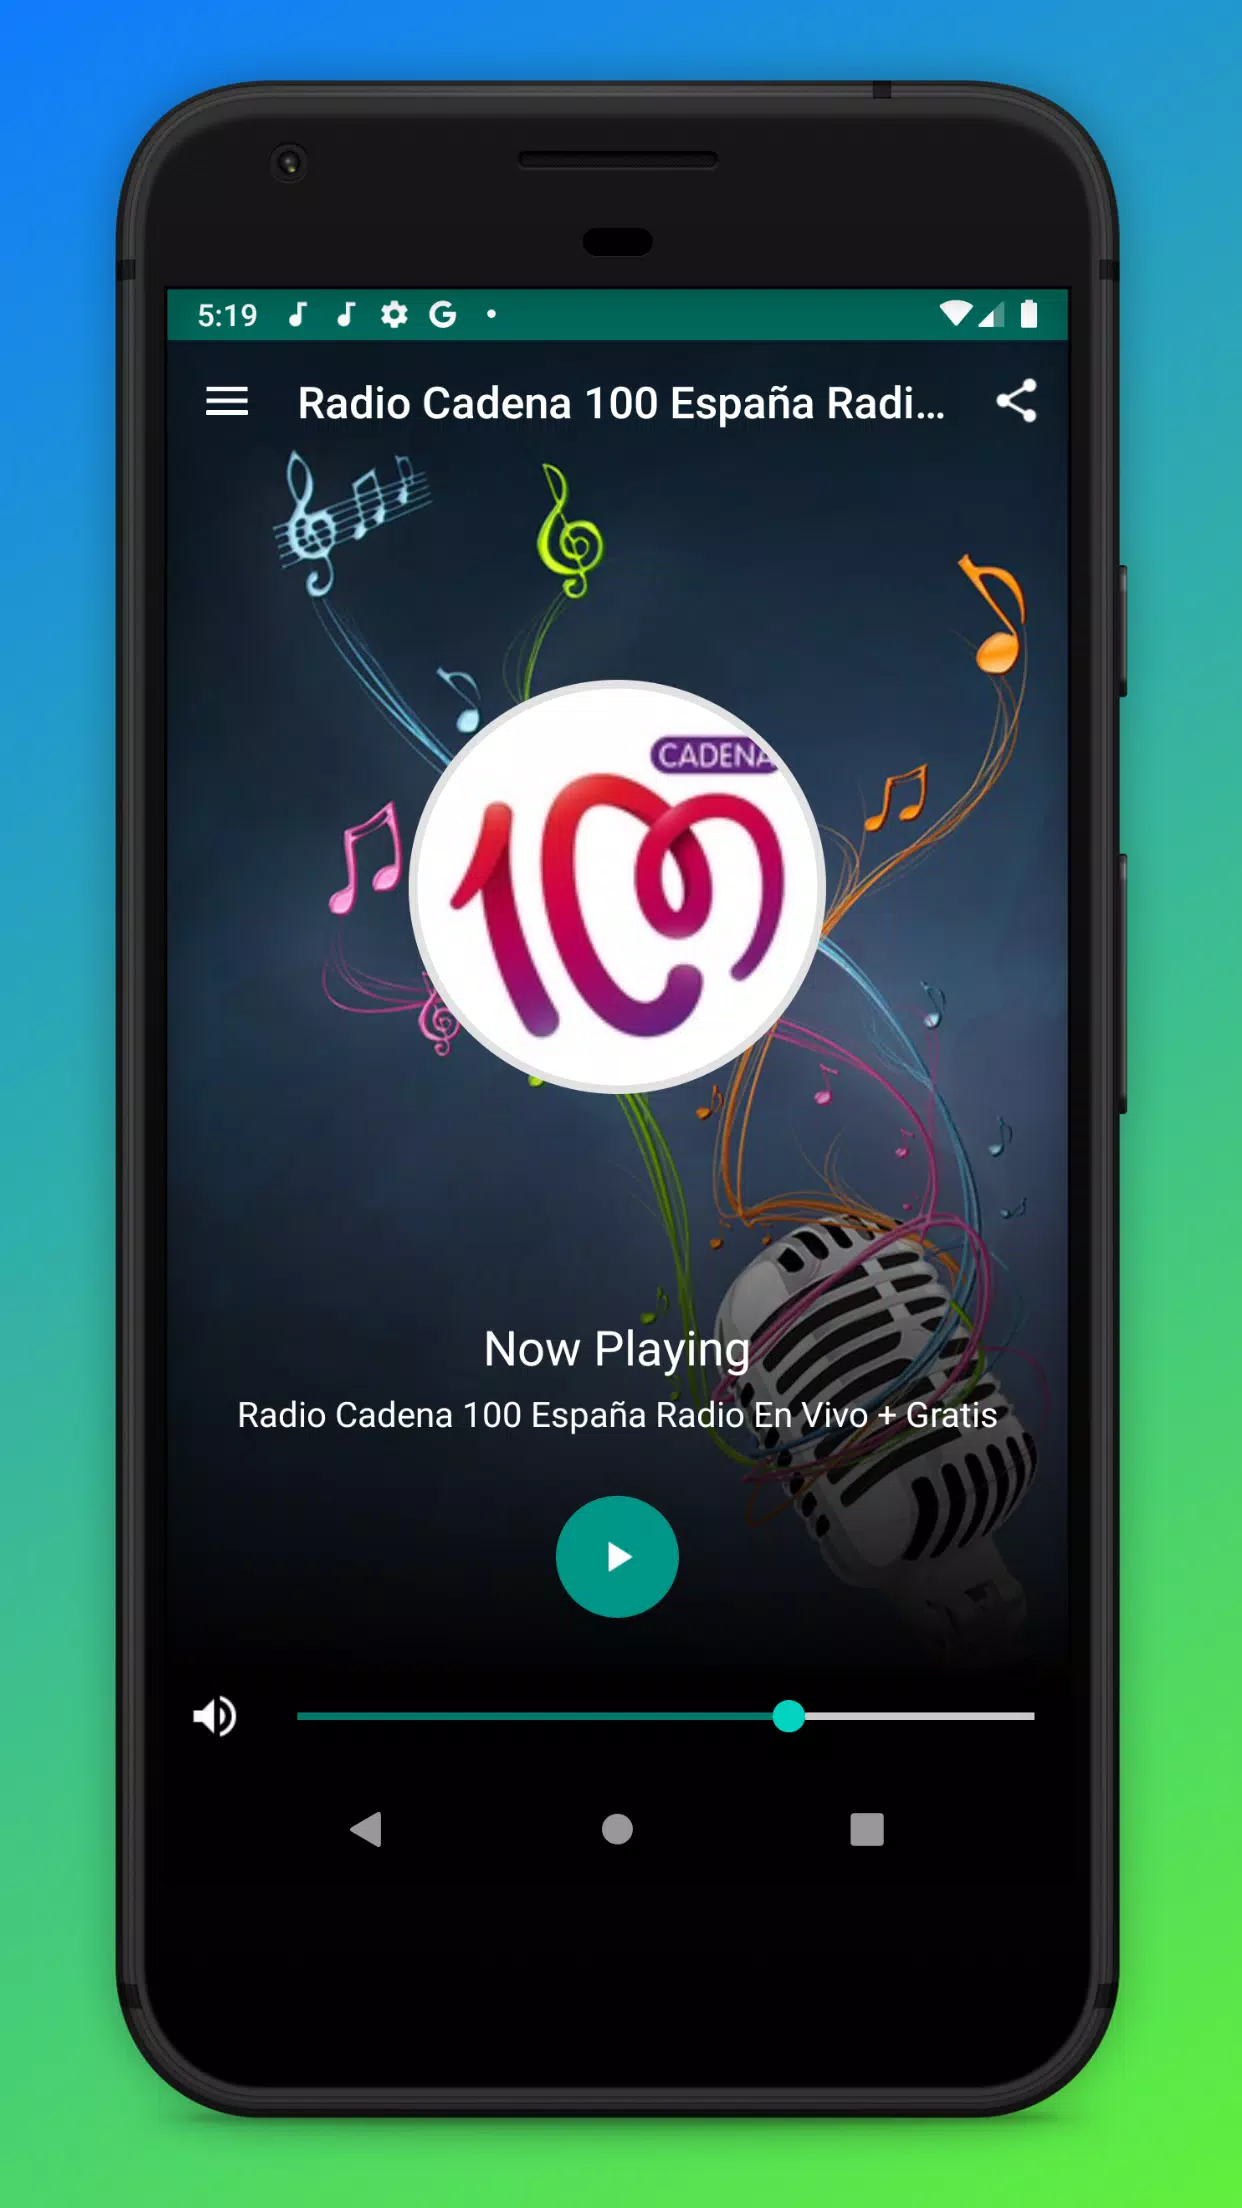 Radio Cadena 100 España Radio En Vivo + Gratis APK für Android herunterladen